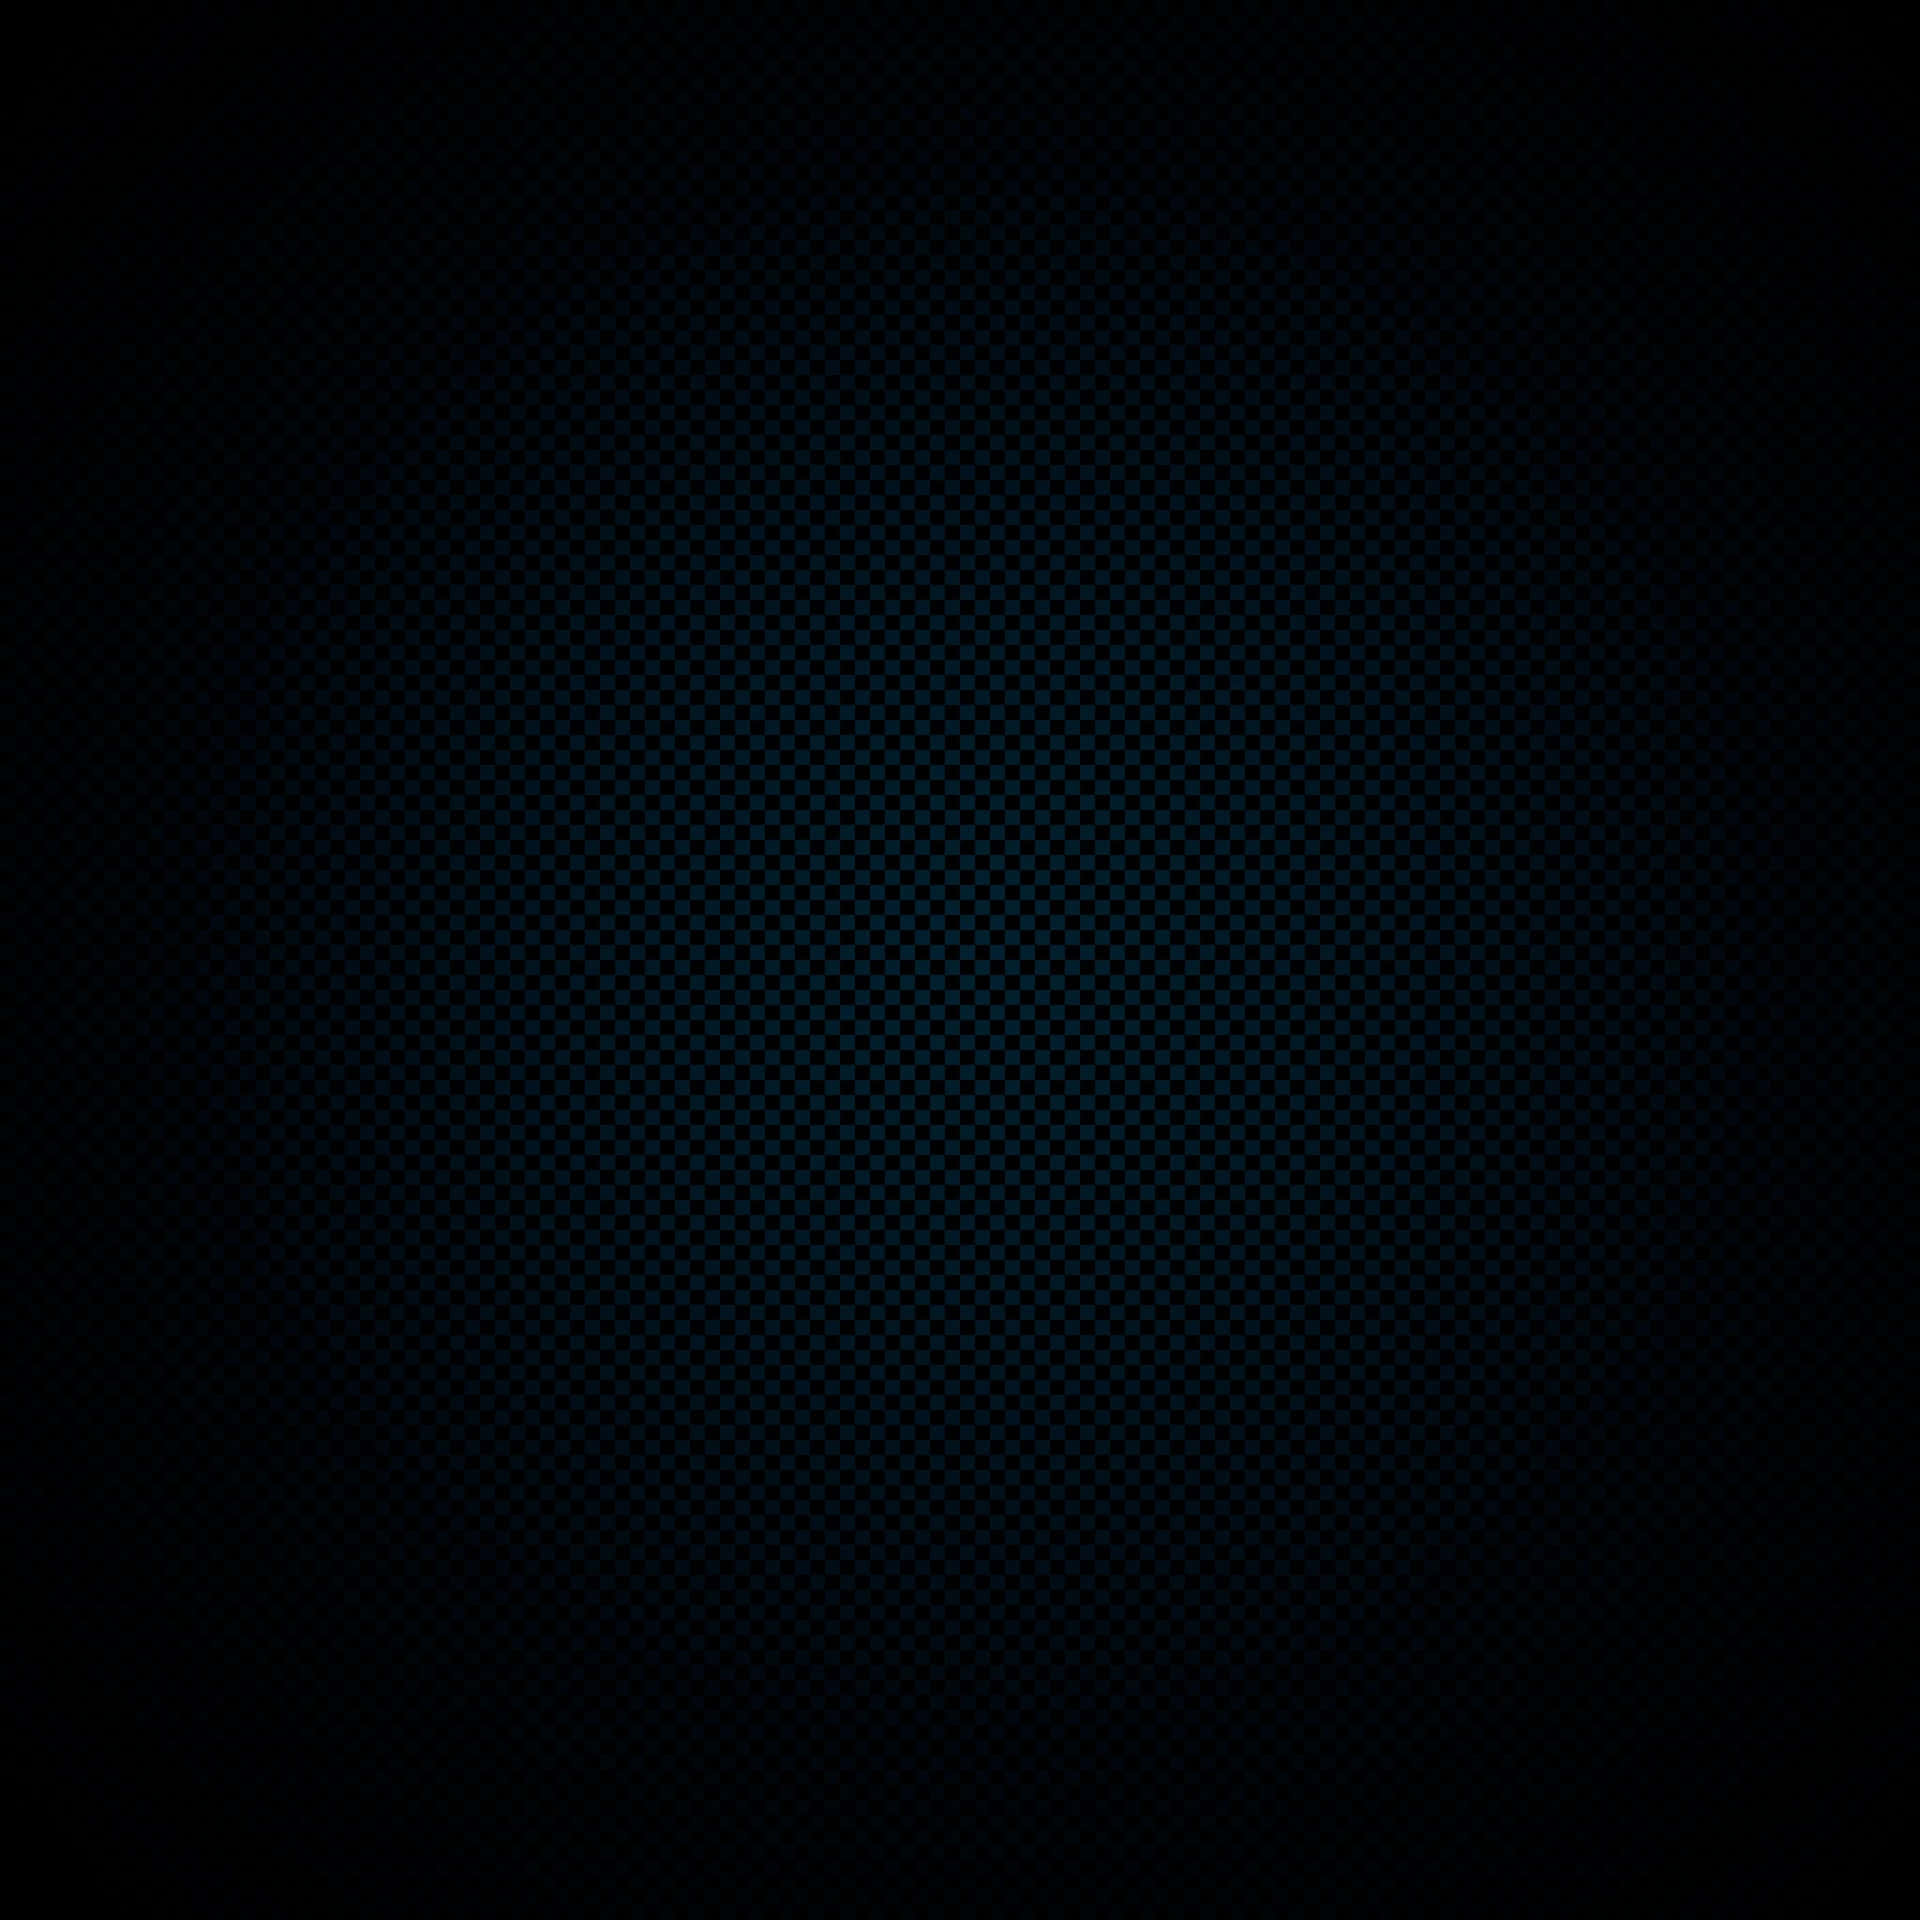 Minimalistic Black iPad with Blue Textured Dots Wallpaper